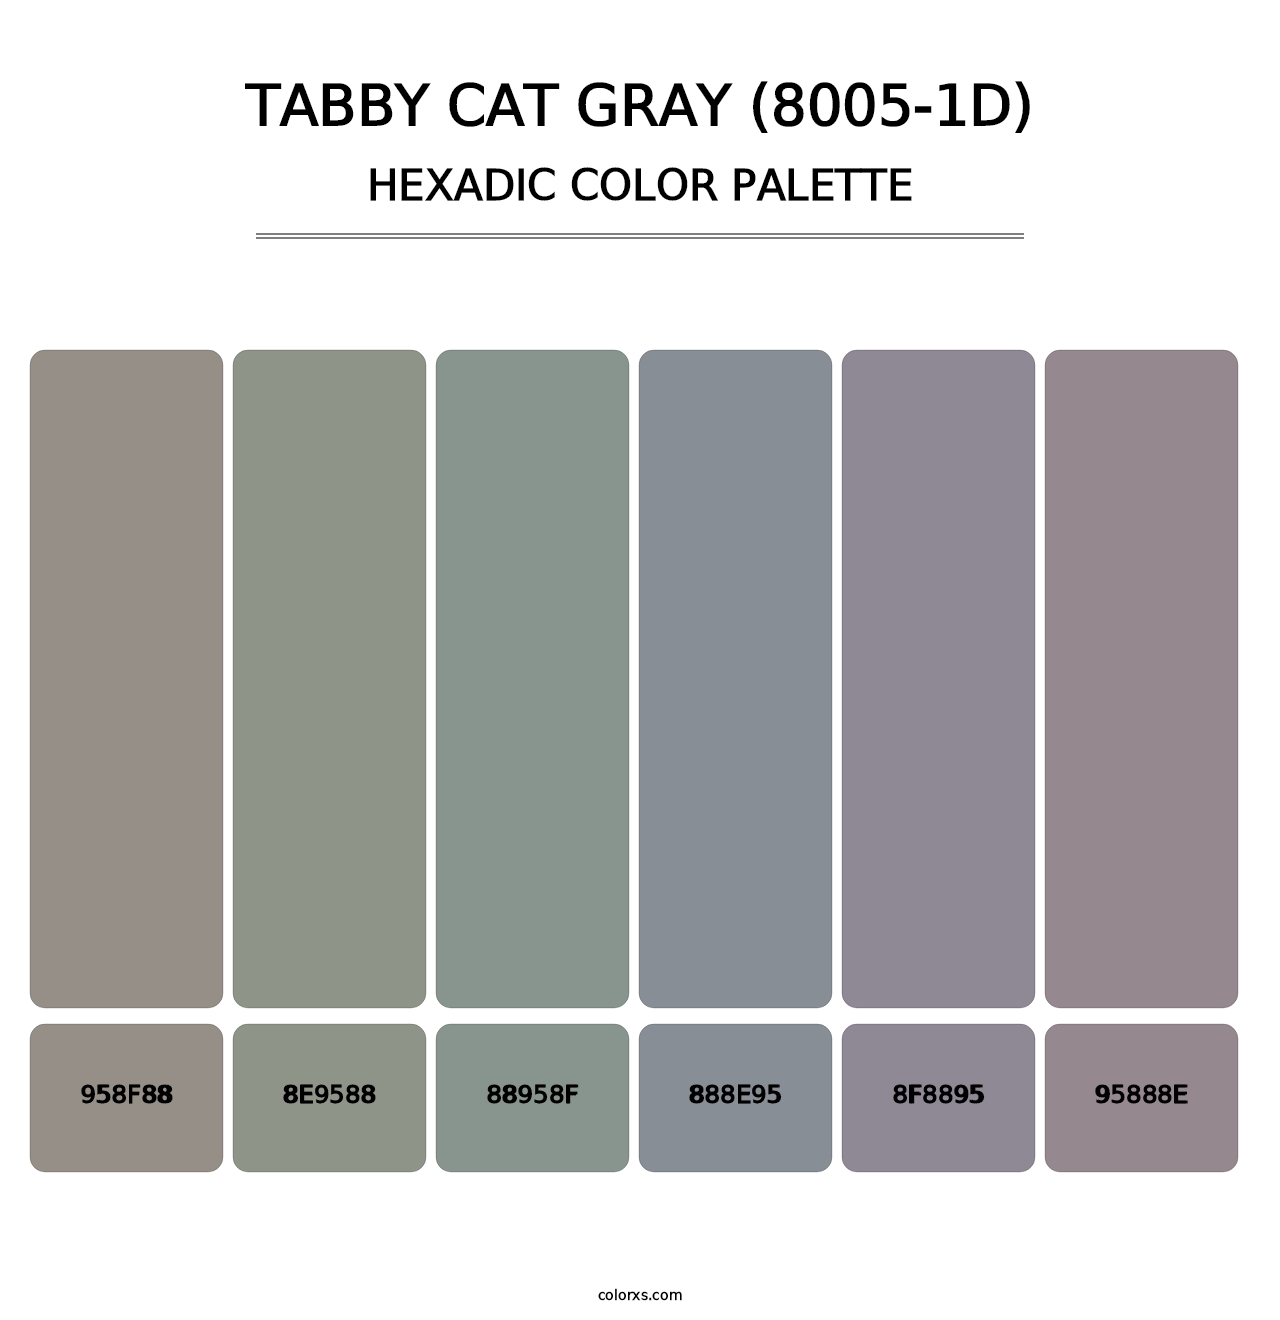 Tabby Cat Gray (8005-1D) - Hexadic Color Palette